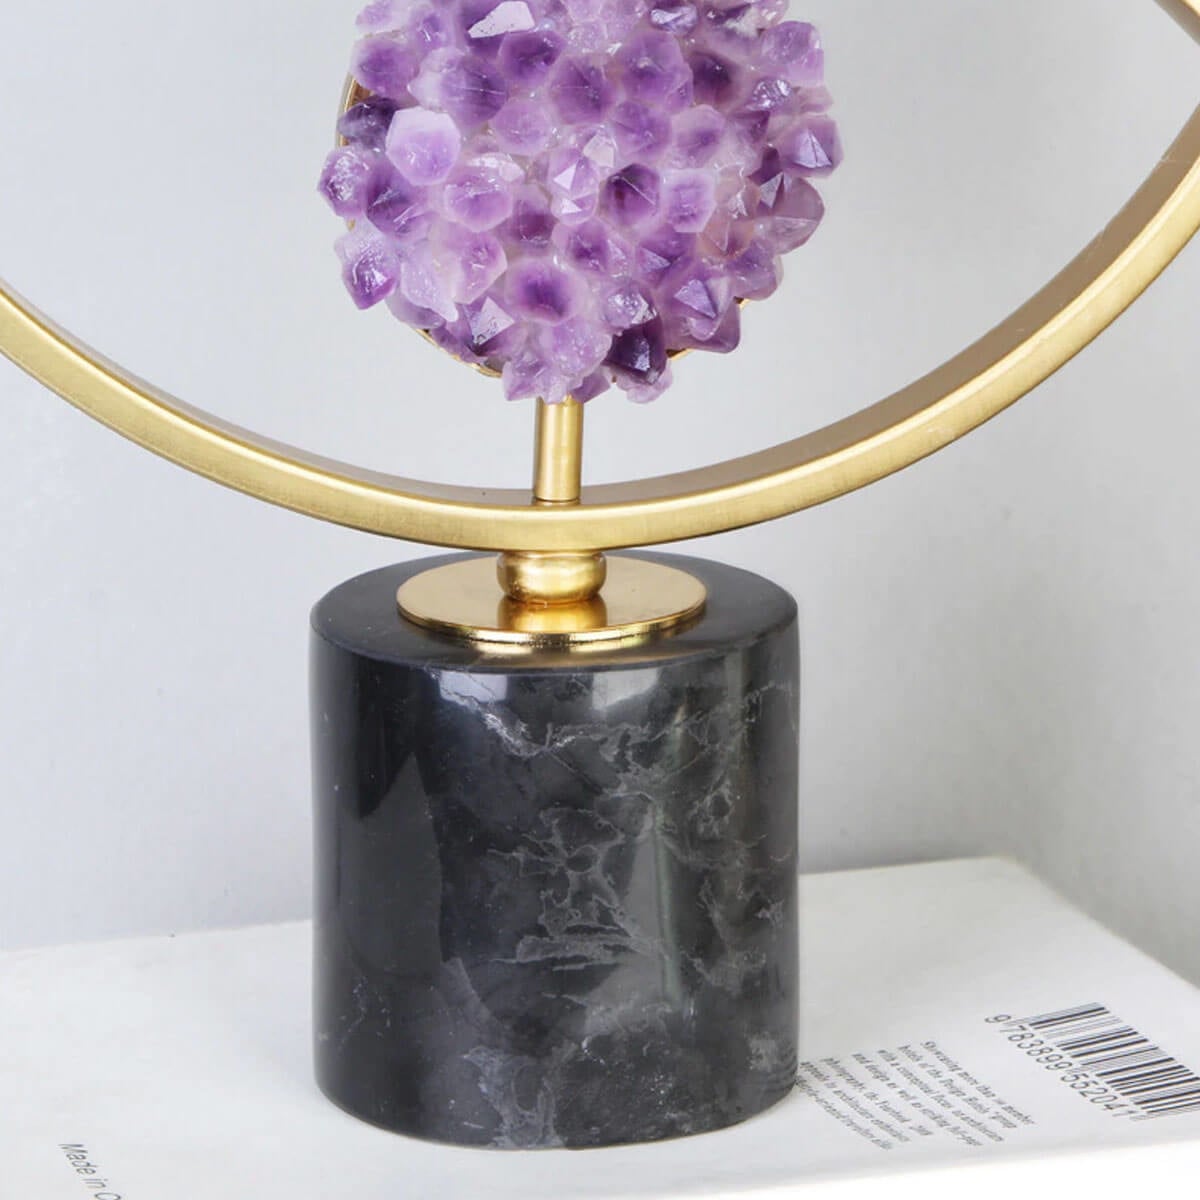 The Luxury Metal Crystal Purple Eye Sculpture